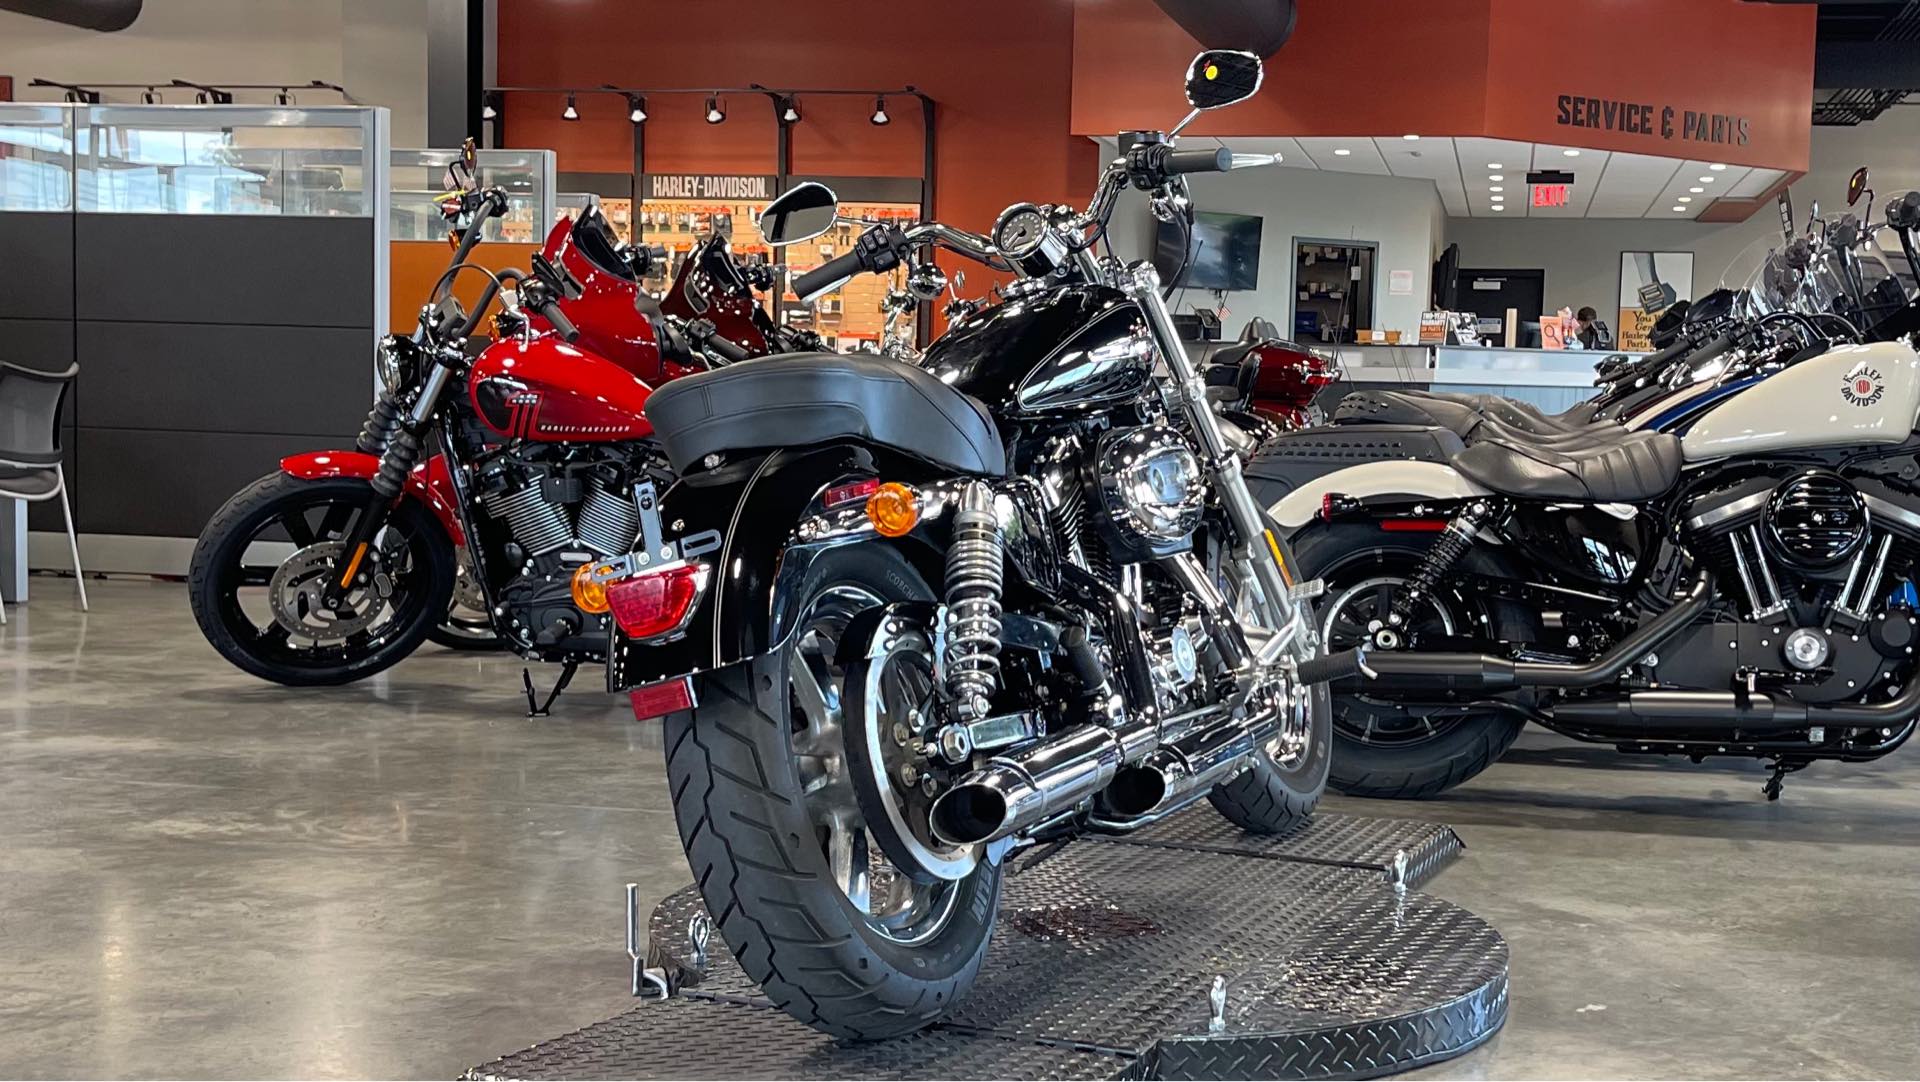 2016 Harley-Davidson Sportster 1200 Custom at Keystone Harley-Davidson